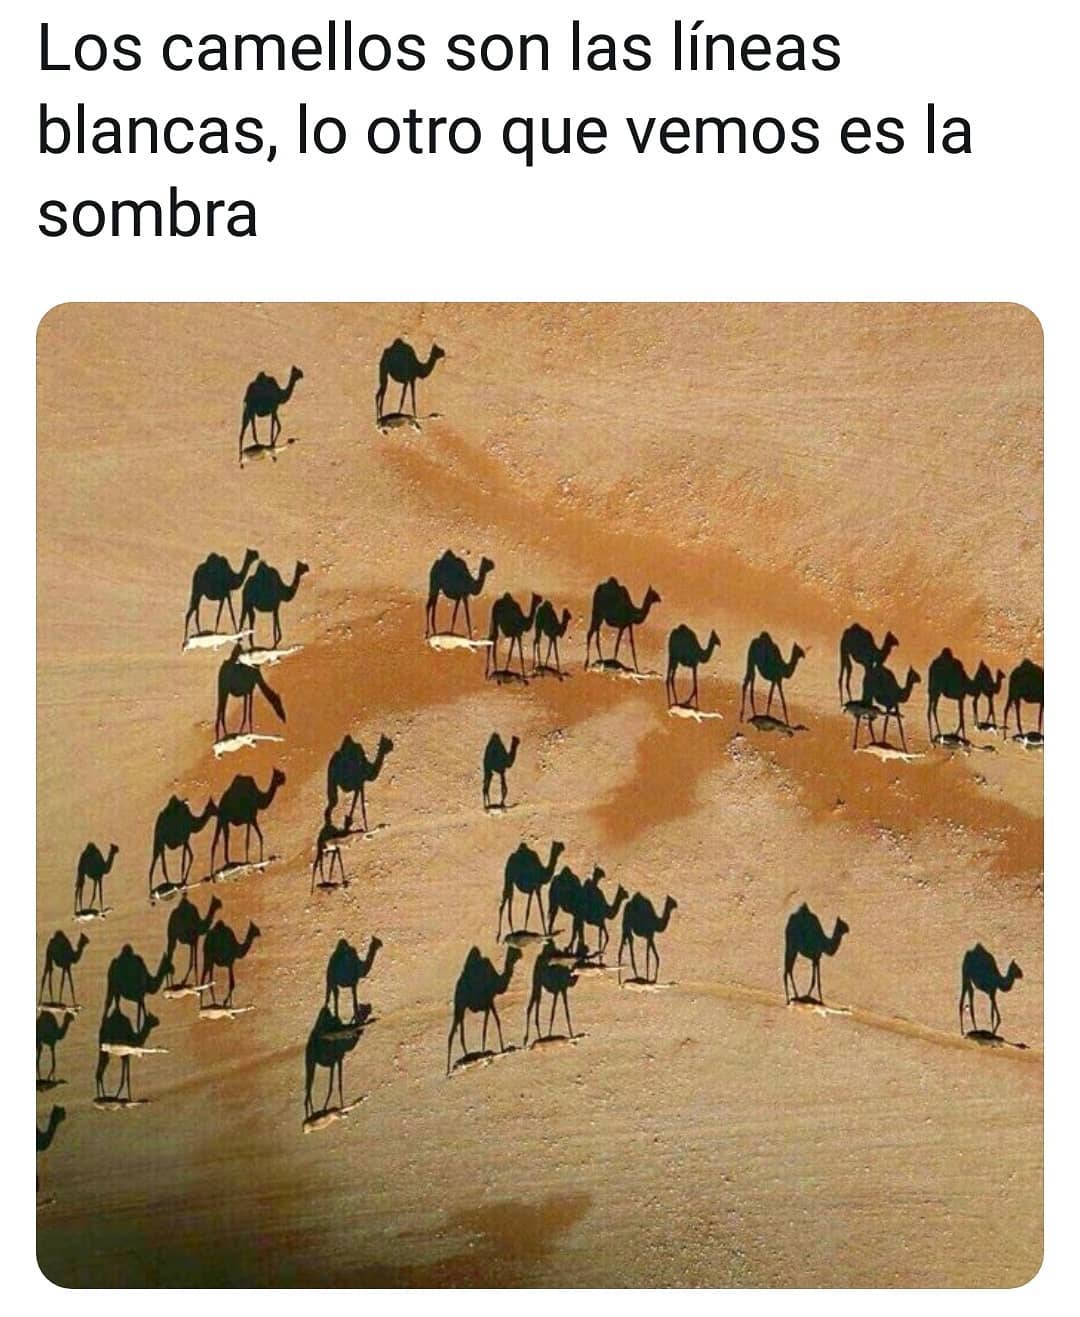 Los camellos son las líneas blancas, lo otro que vemos es la sombra.